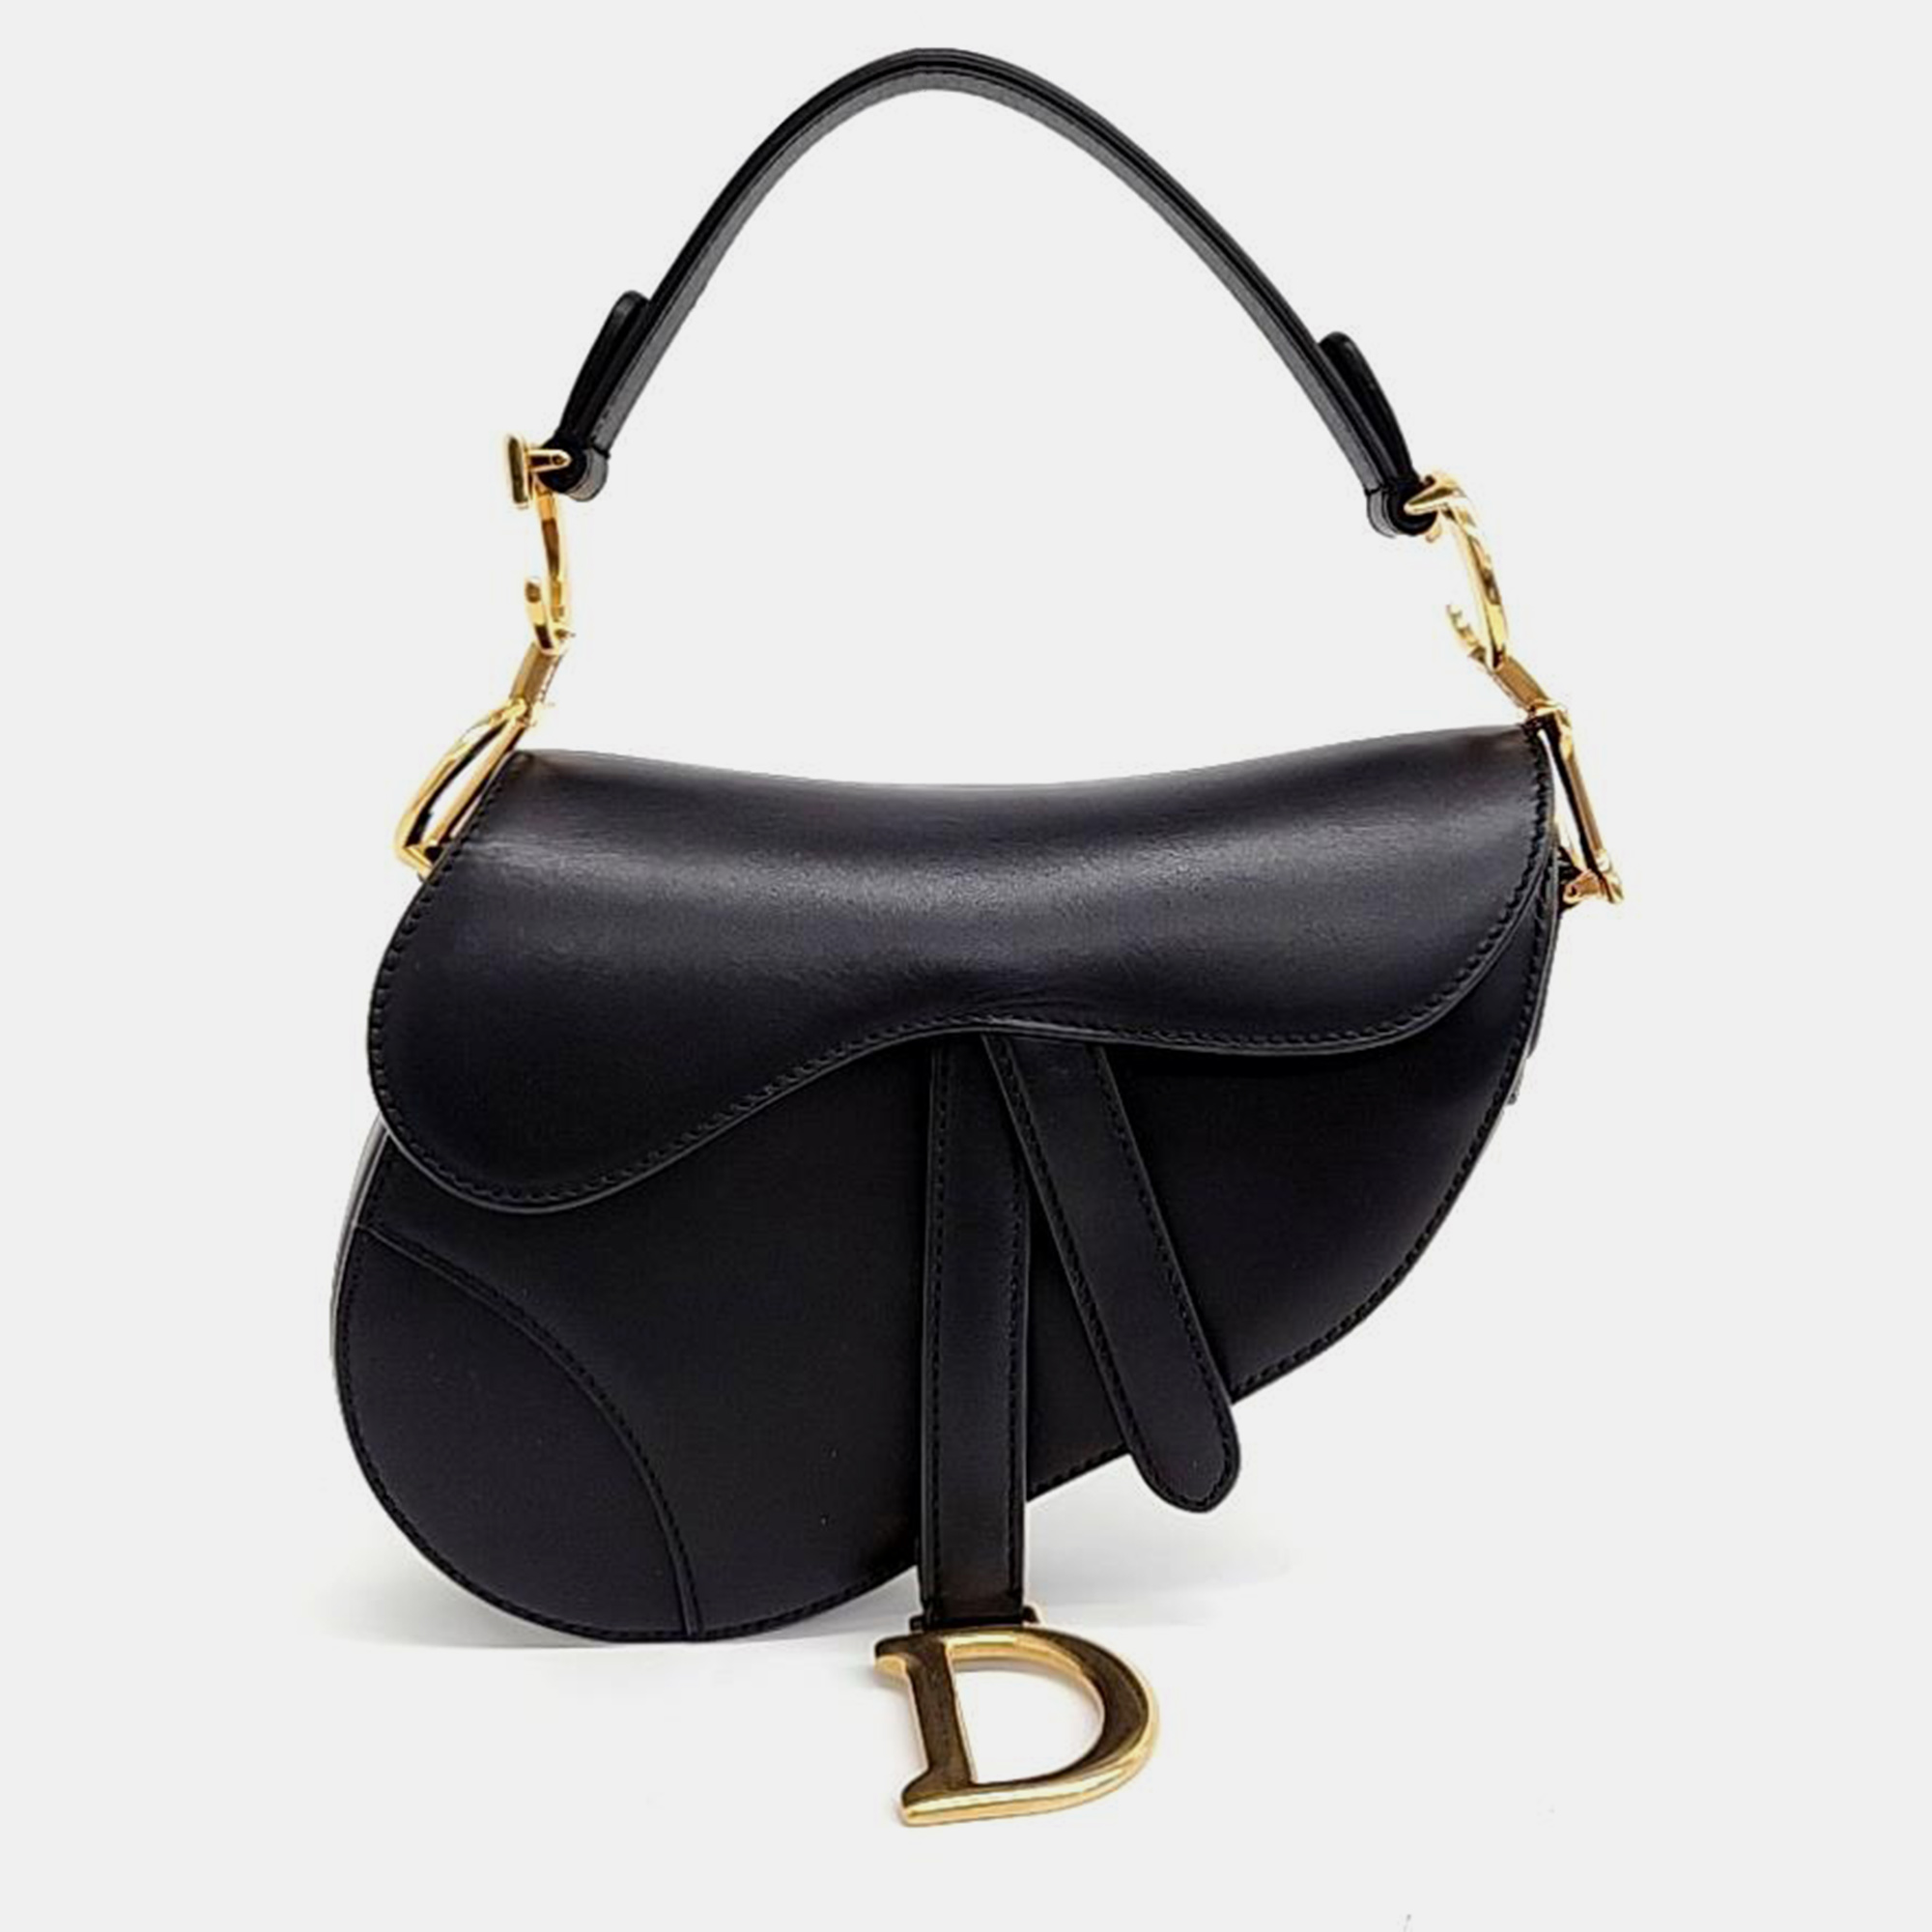 Dior black leather mini saddle bag